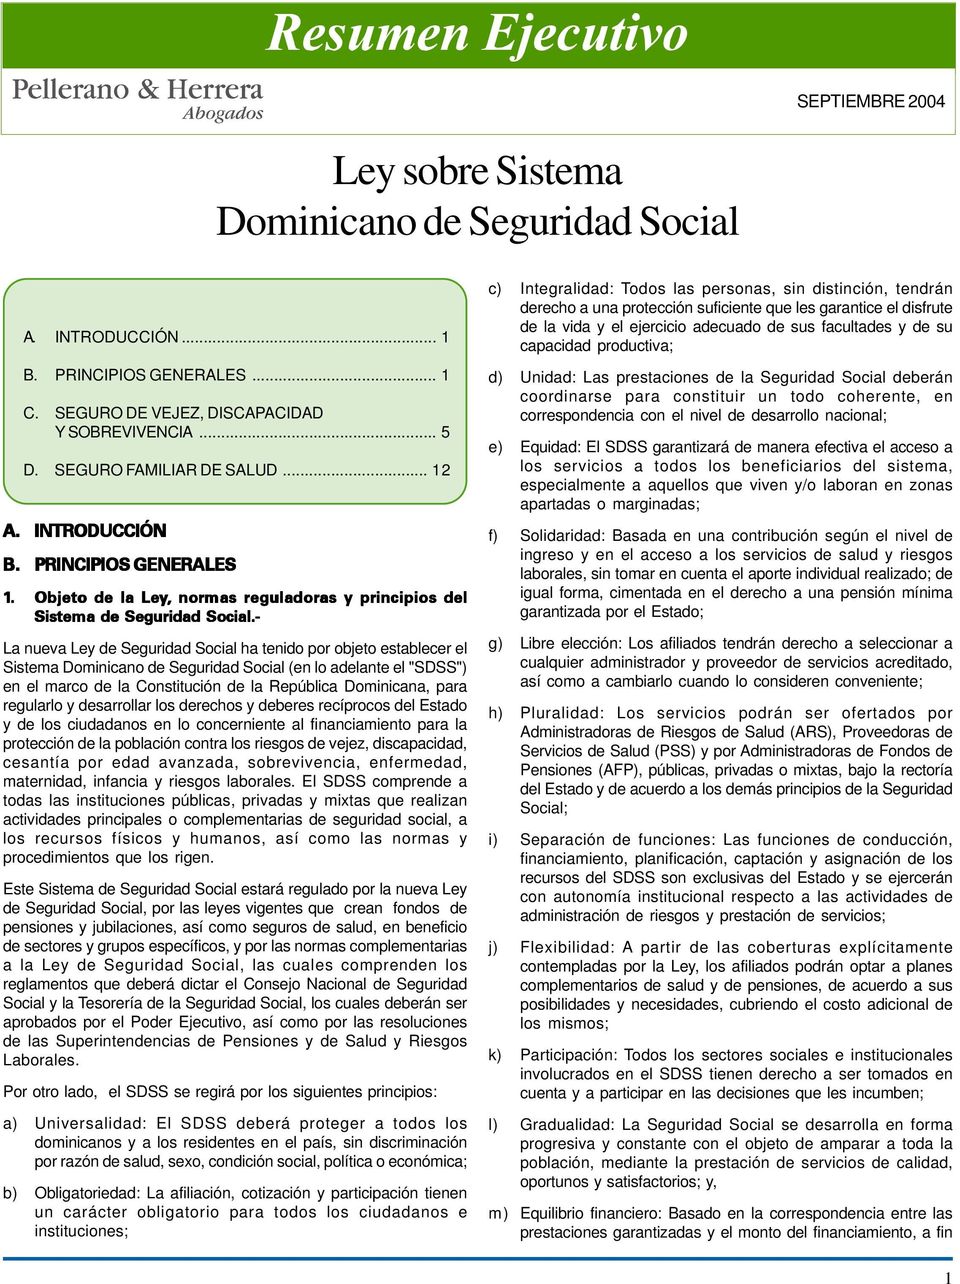 - La nueva Ley de Seguridad Social ha tenido por objeto establecer el Sistema Dominicano de Seguridad Social (en lo adelante el "SDSS") en el marco de la Constitución de la República Dominicana, para